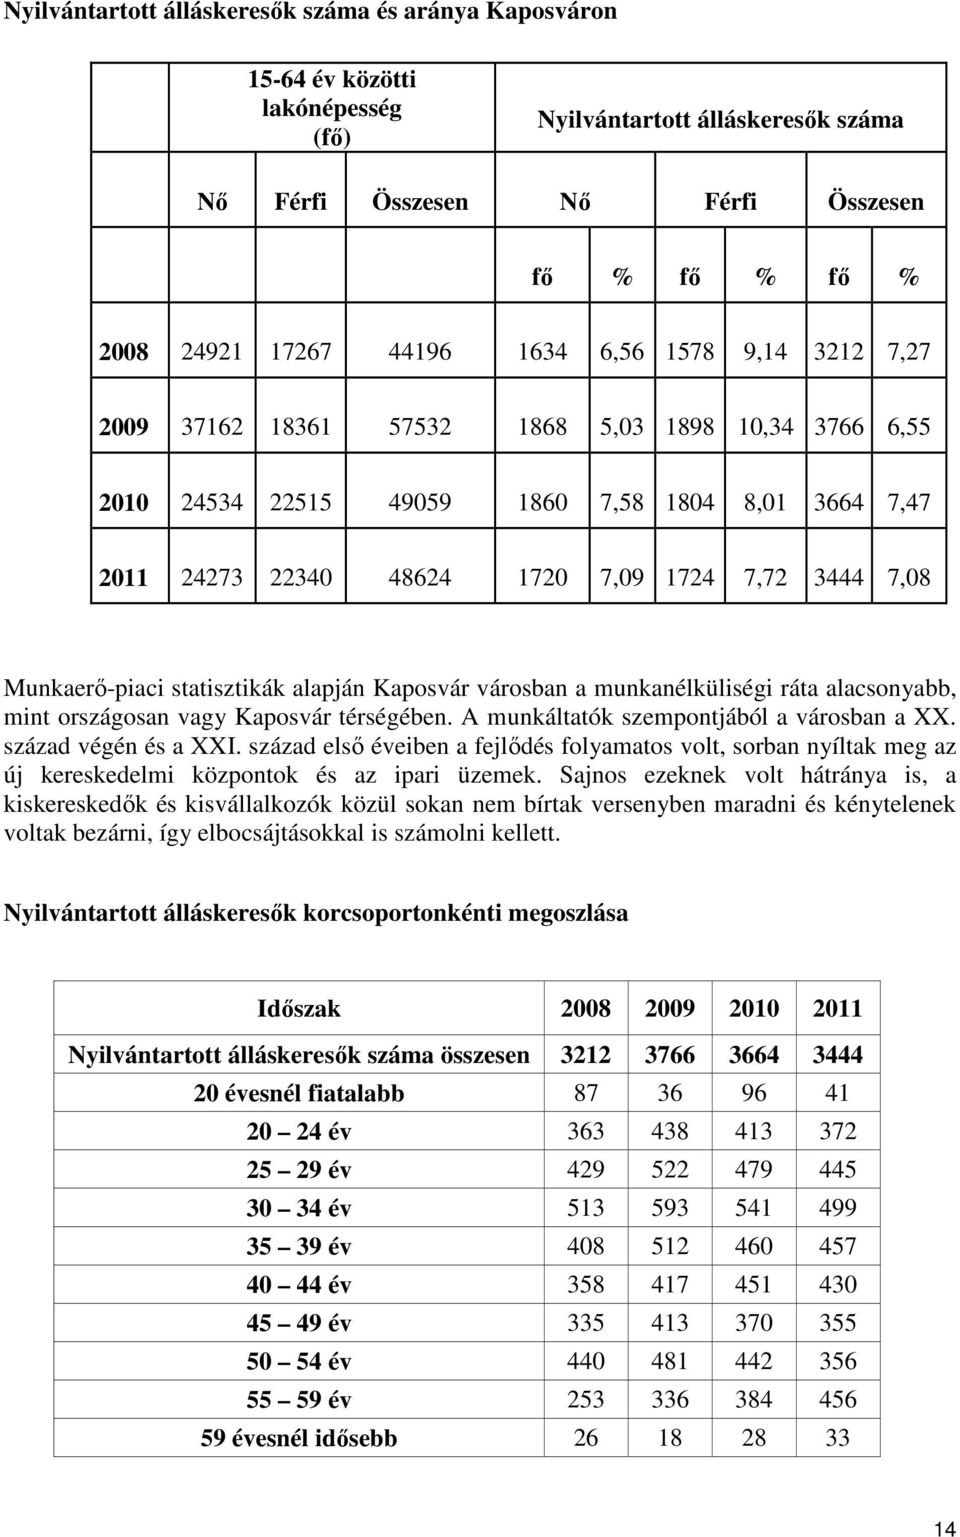 Munkaerő-piaci statisztikák alapján Kaposvár városban a munkanélküliségi ráta alacsonyabb, mint országosan vagy Kaposvár térségében. A munkáltatók szempontjából a városban a XX. század végén és a XXI.